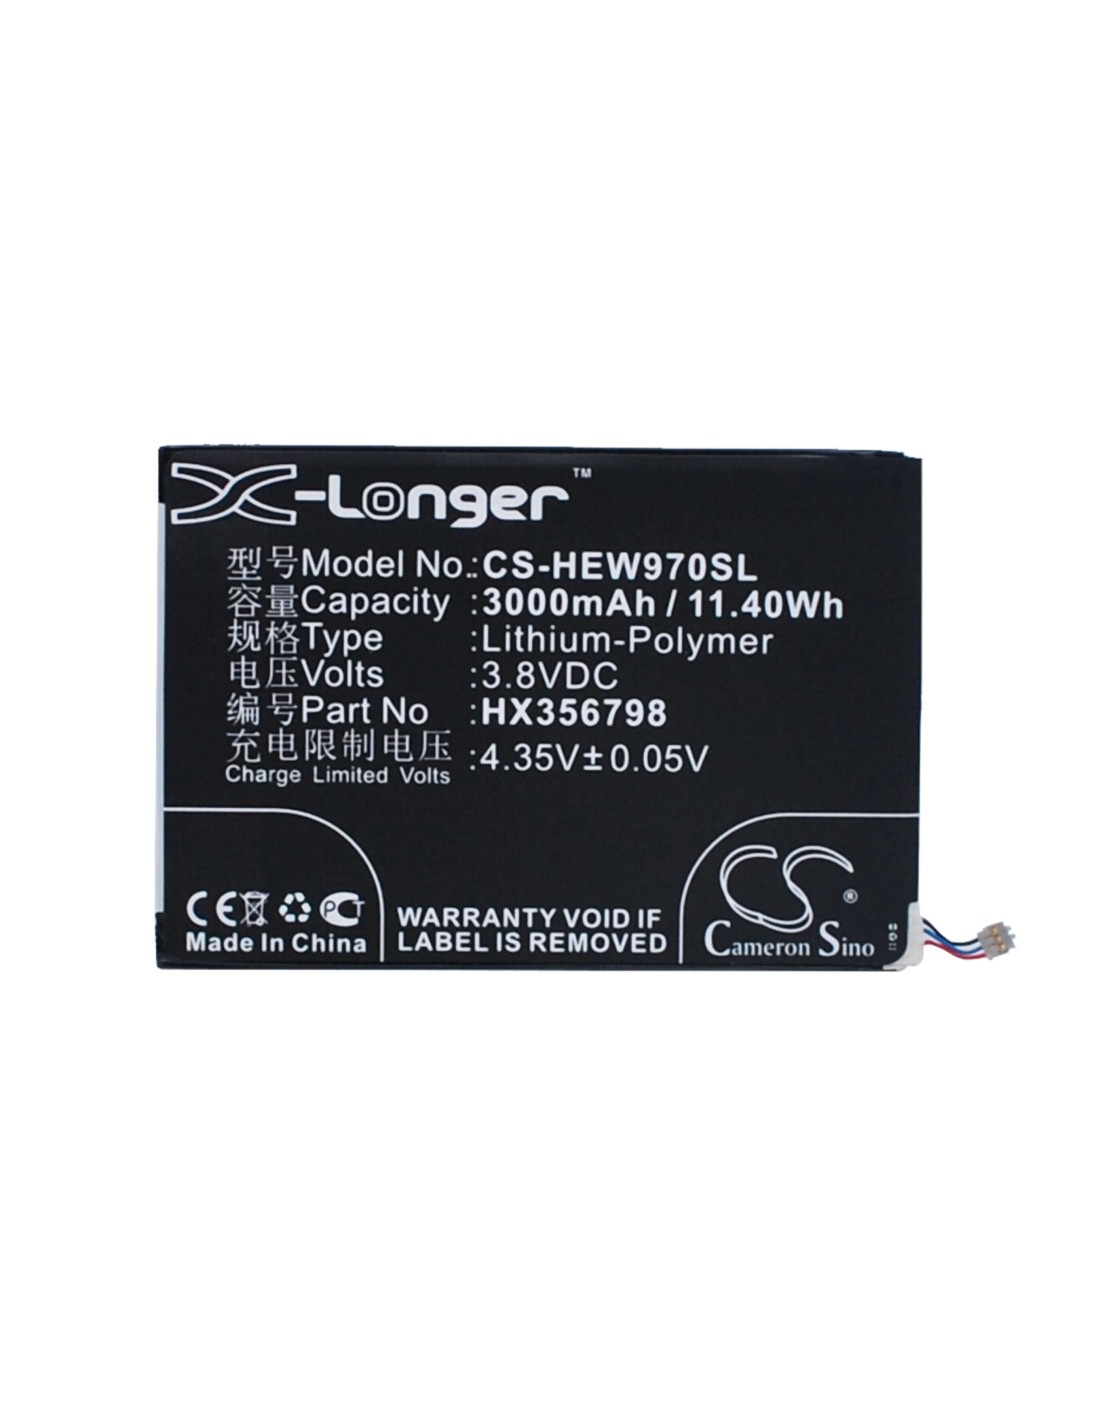 Battery for Haier W970, HW-W970 3.8V, 3000mAh - 11.40Wh